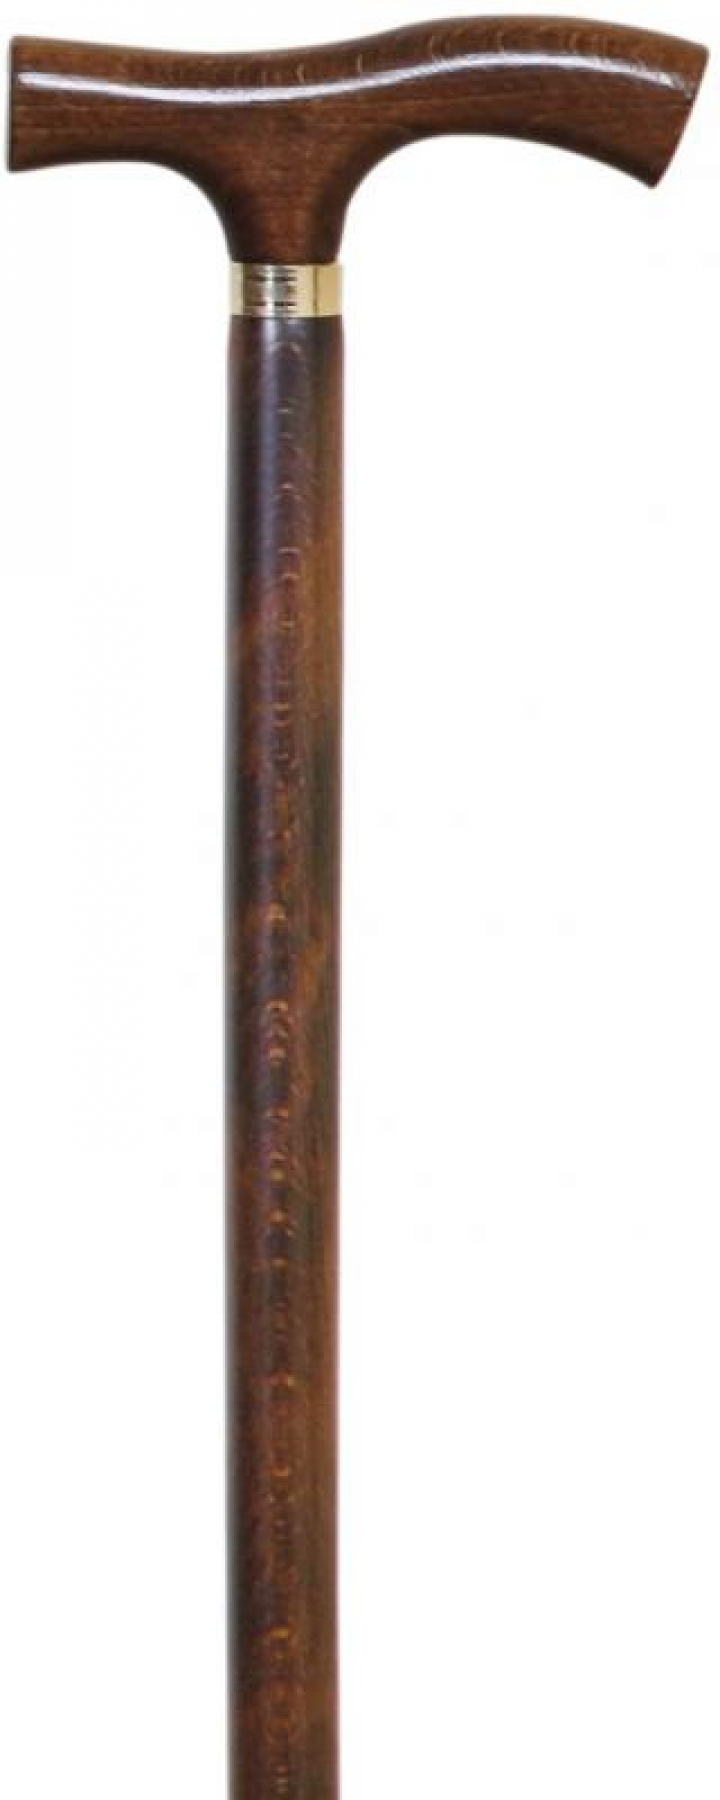 Bengala de madeira de cor castanha com anilha e punho em T e ponteira antiderrapante Ref.81 31BE03